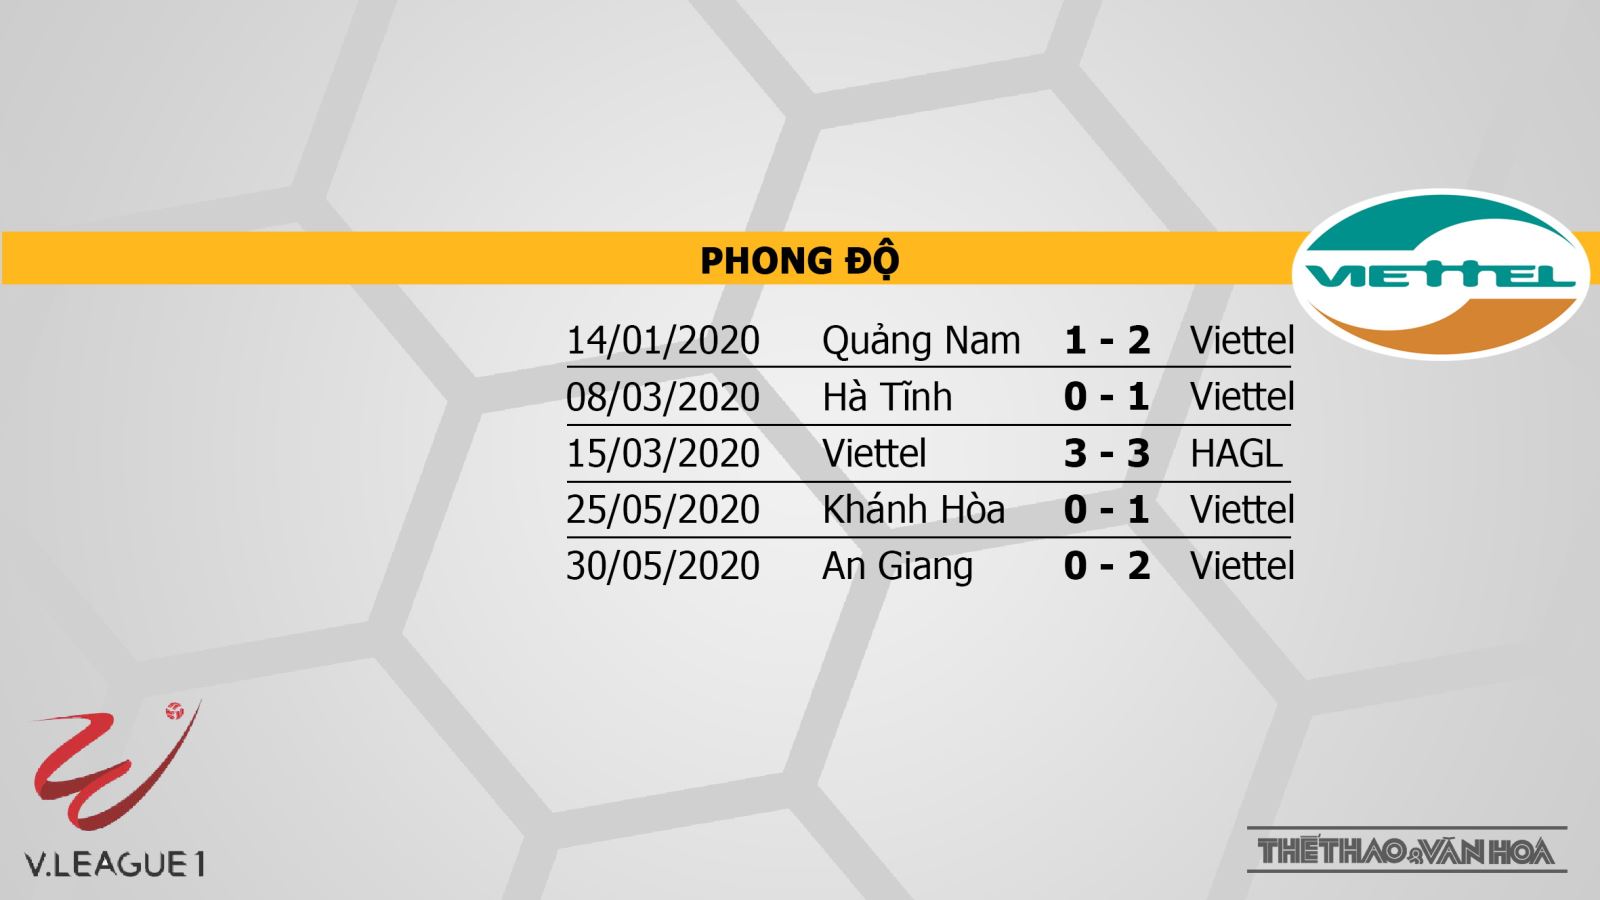 Nam Định vs Viettel, Nam Định, Viettel, nhận định bóng đá bóng đá, nhận định, kèo bóng đá, trực tiếp bóng đá, V-League